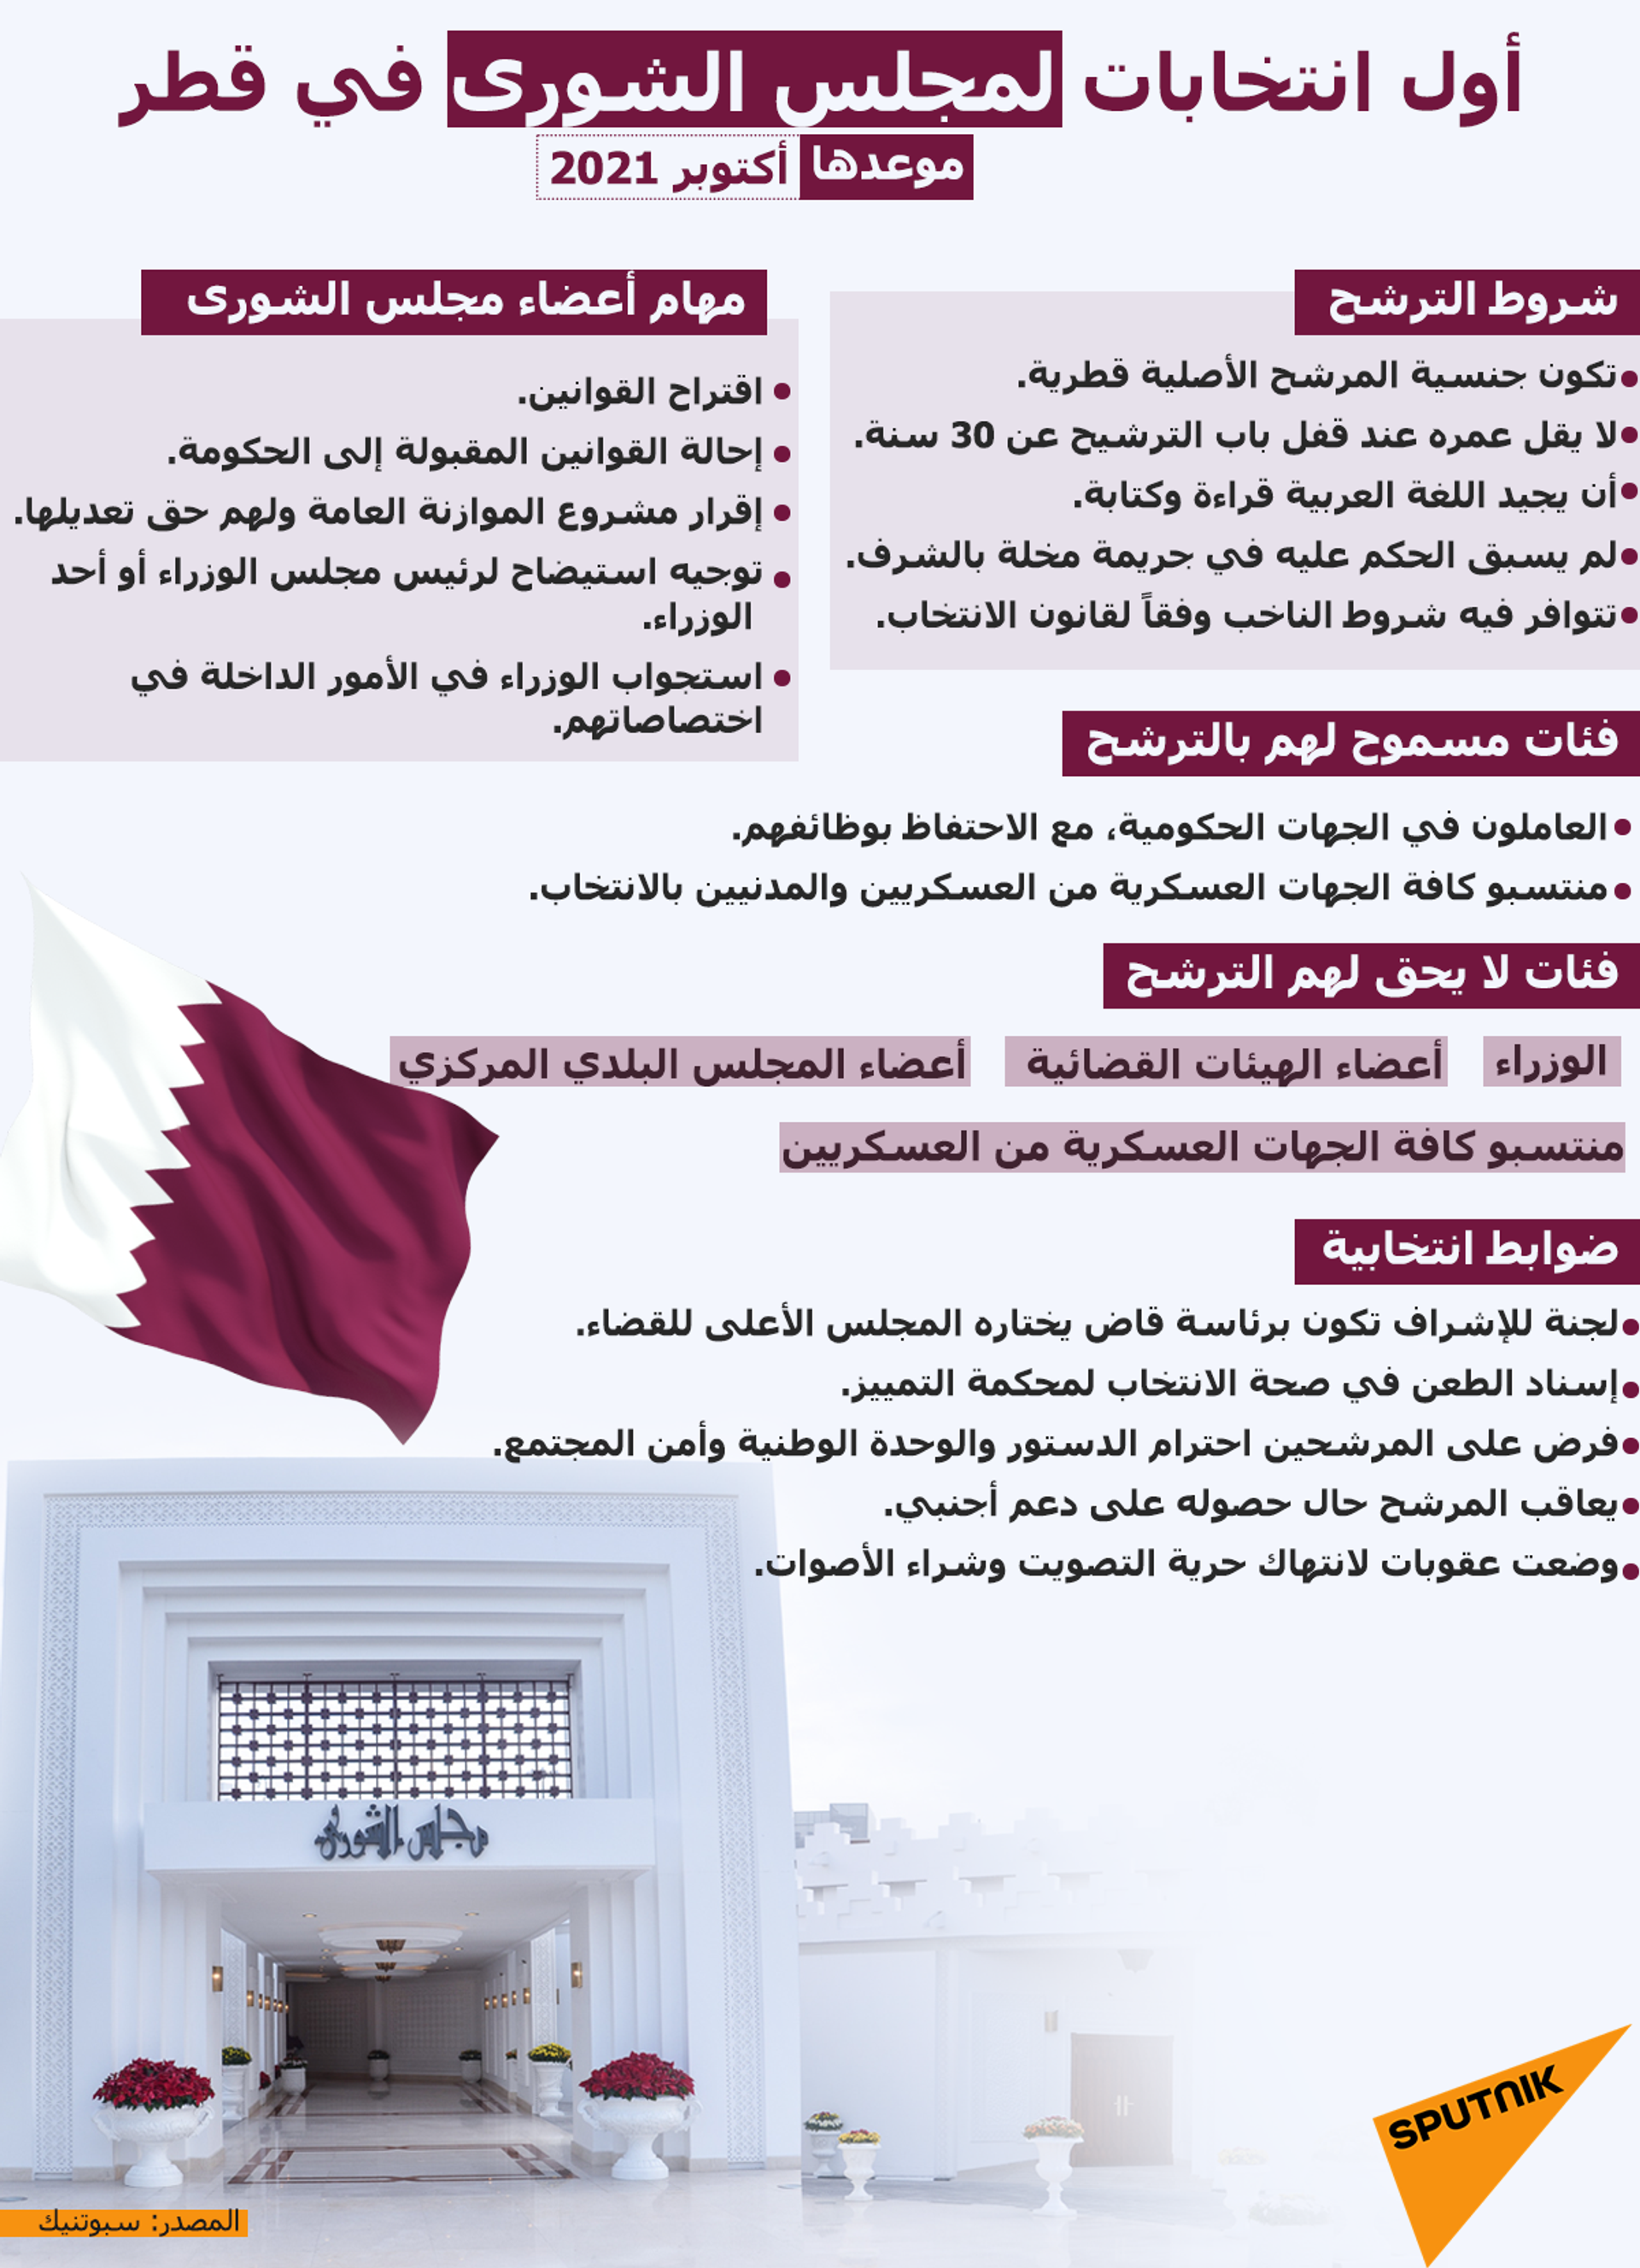 أمير قطر يحدد الثاني من أكتوبر موعدا لانتخاب أعضاء مجلس الشورى  - سبوتنيك عربي, 1920, 22.08.2021